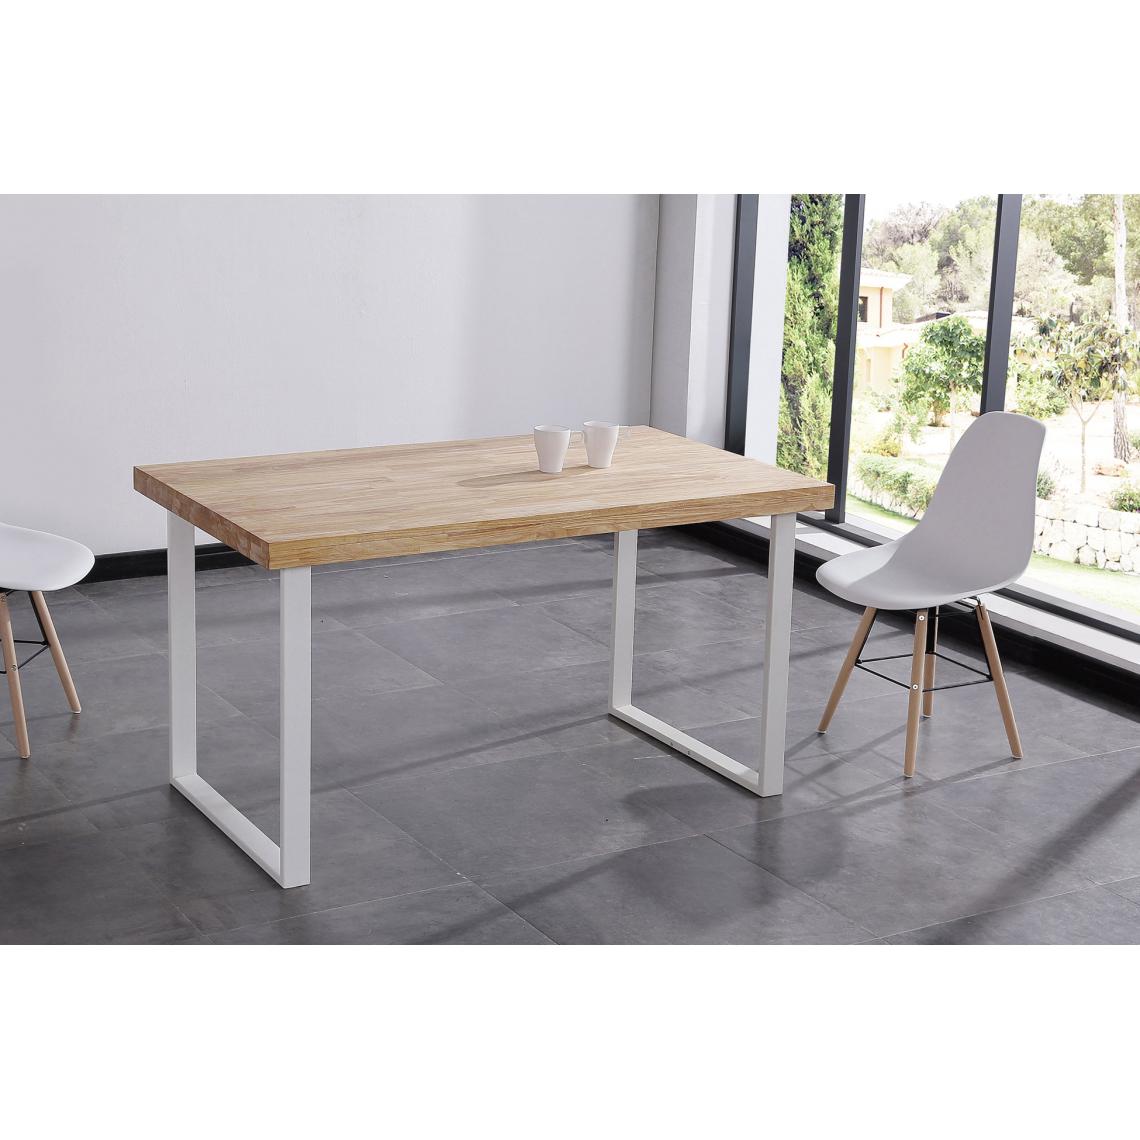 Pegane - Table à manger coloris chêne nordique / pieds blanc, Longueur 140 x x largeur 80 cm x Hauteur 76,50 cm - Tables à manger